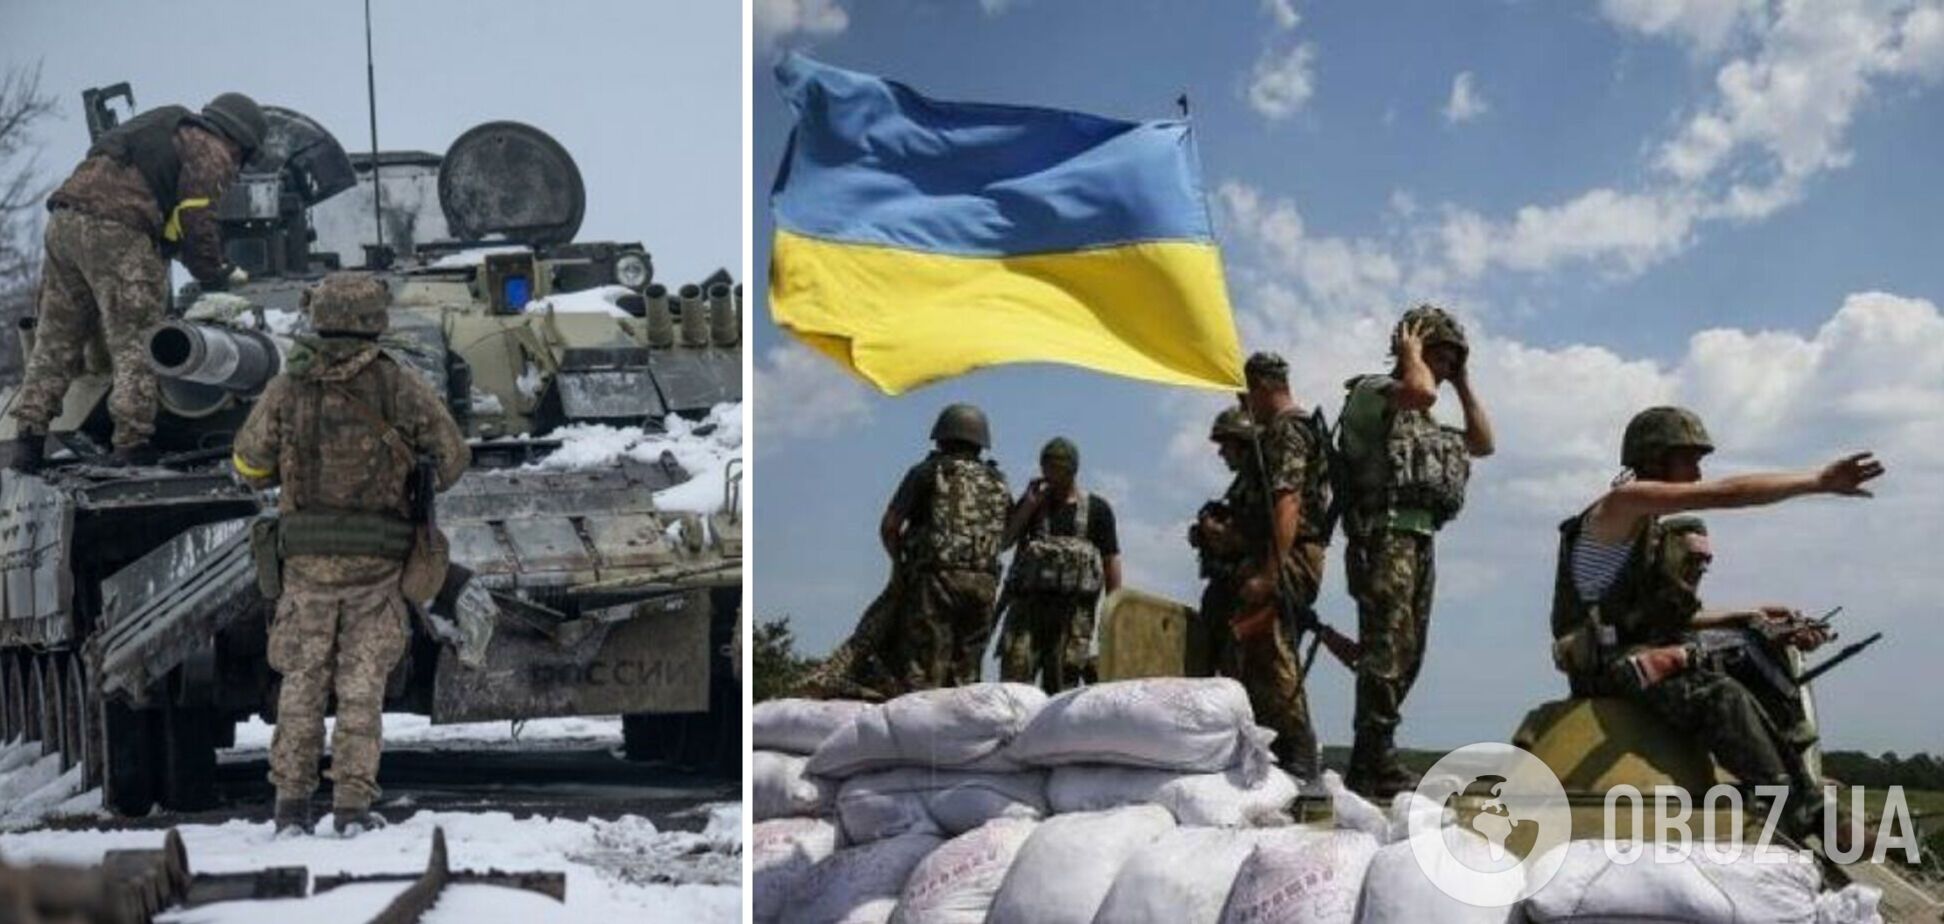 Украина накануне очень активной фазы на фронте: в ГУР дали прогноз